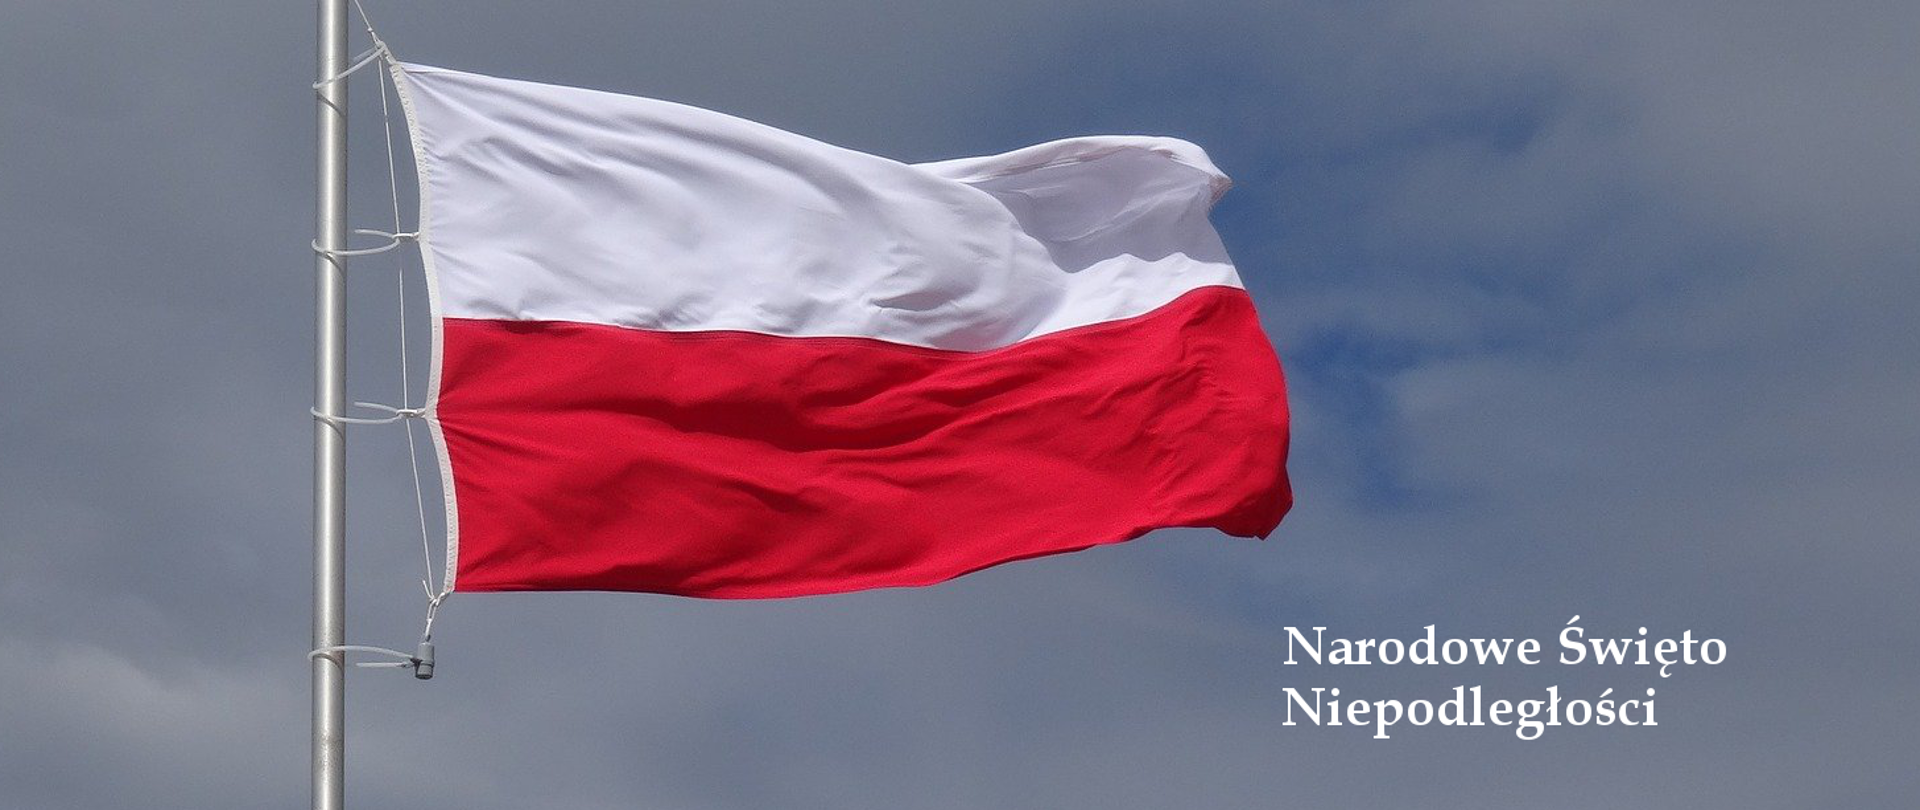 Flaga Rzeczypospolitej Polskiej na tle nieba. Po prawej stronie napis "Narodowe Święto Niepodległości"